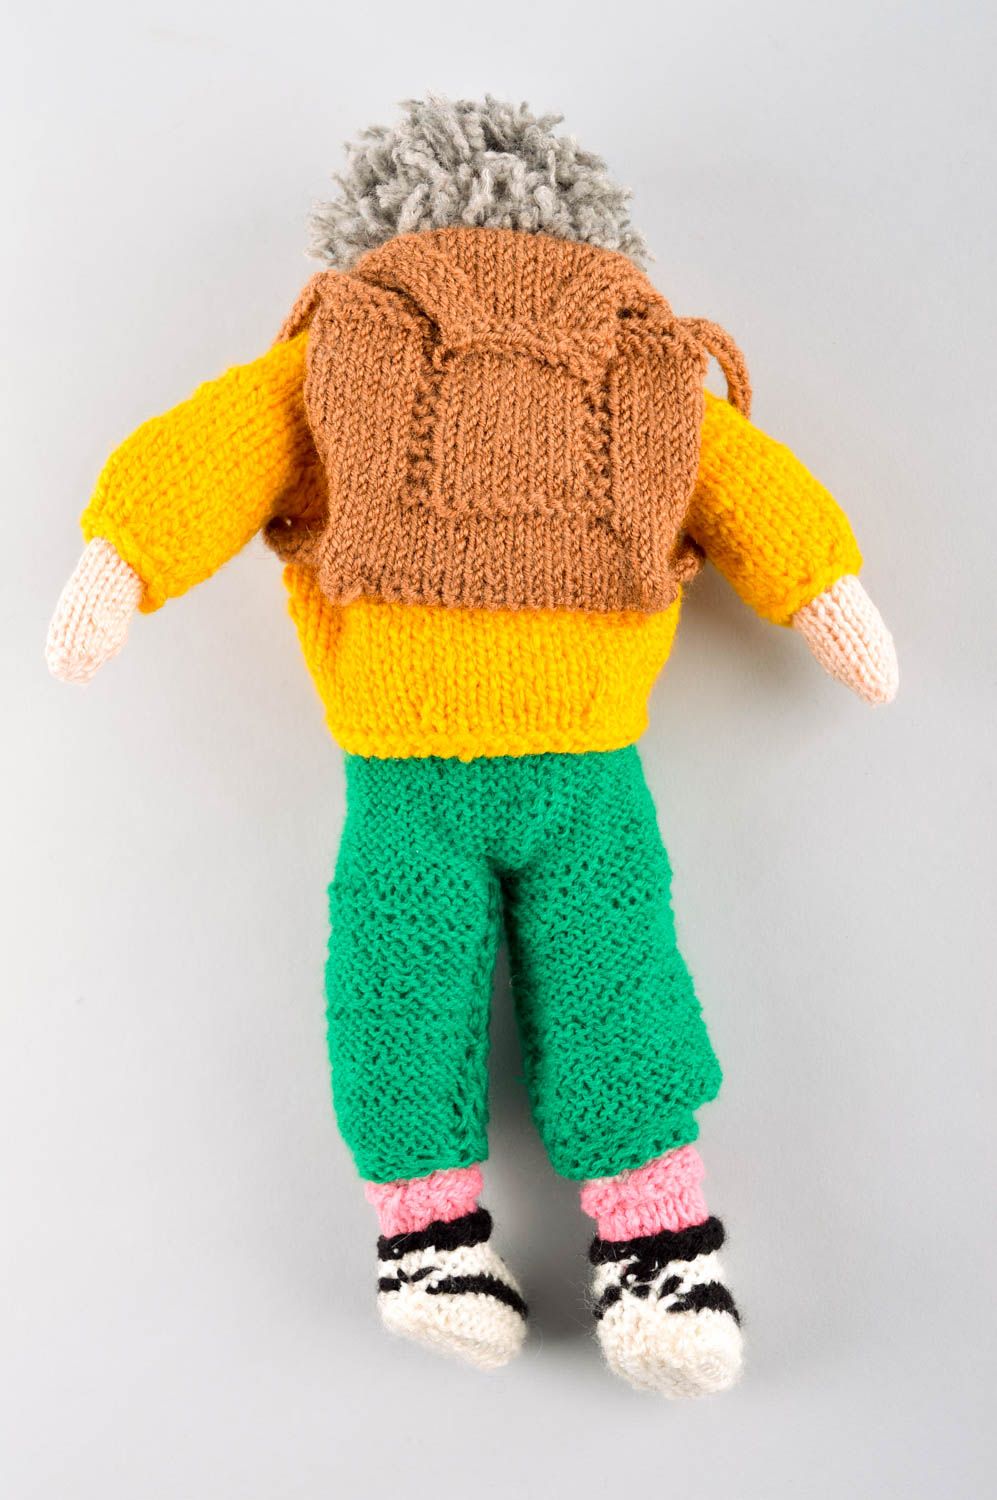 Handmade doll crocheted doll stuffed toy for babies nursery decor ideas photo 4